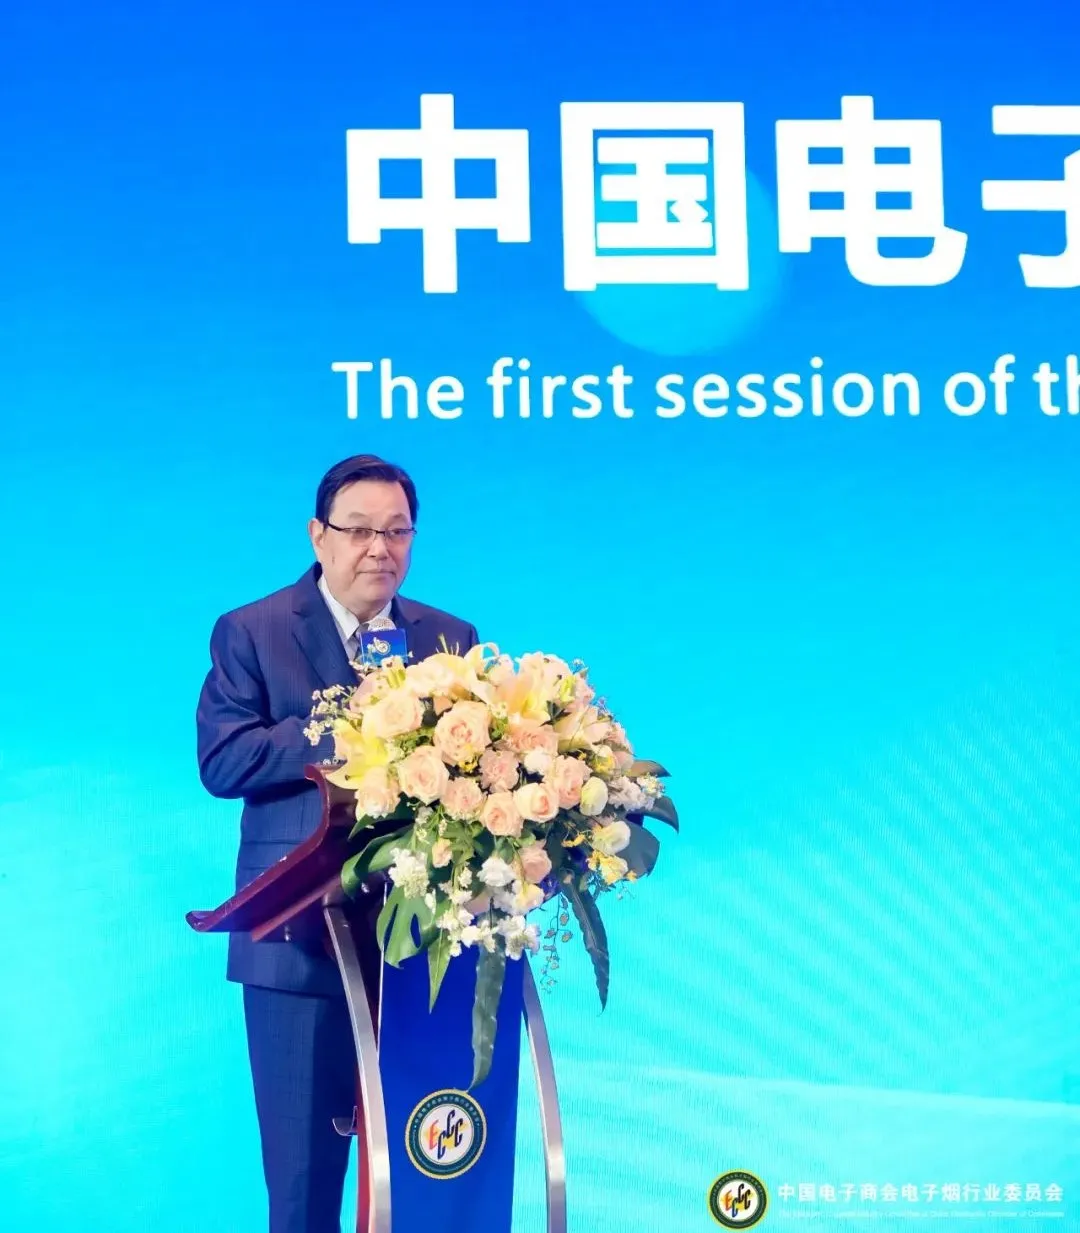 中国电子商会电子烟行业委员会第二届一次理事会在深召开